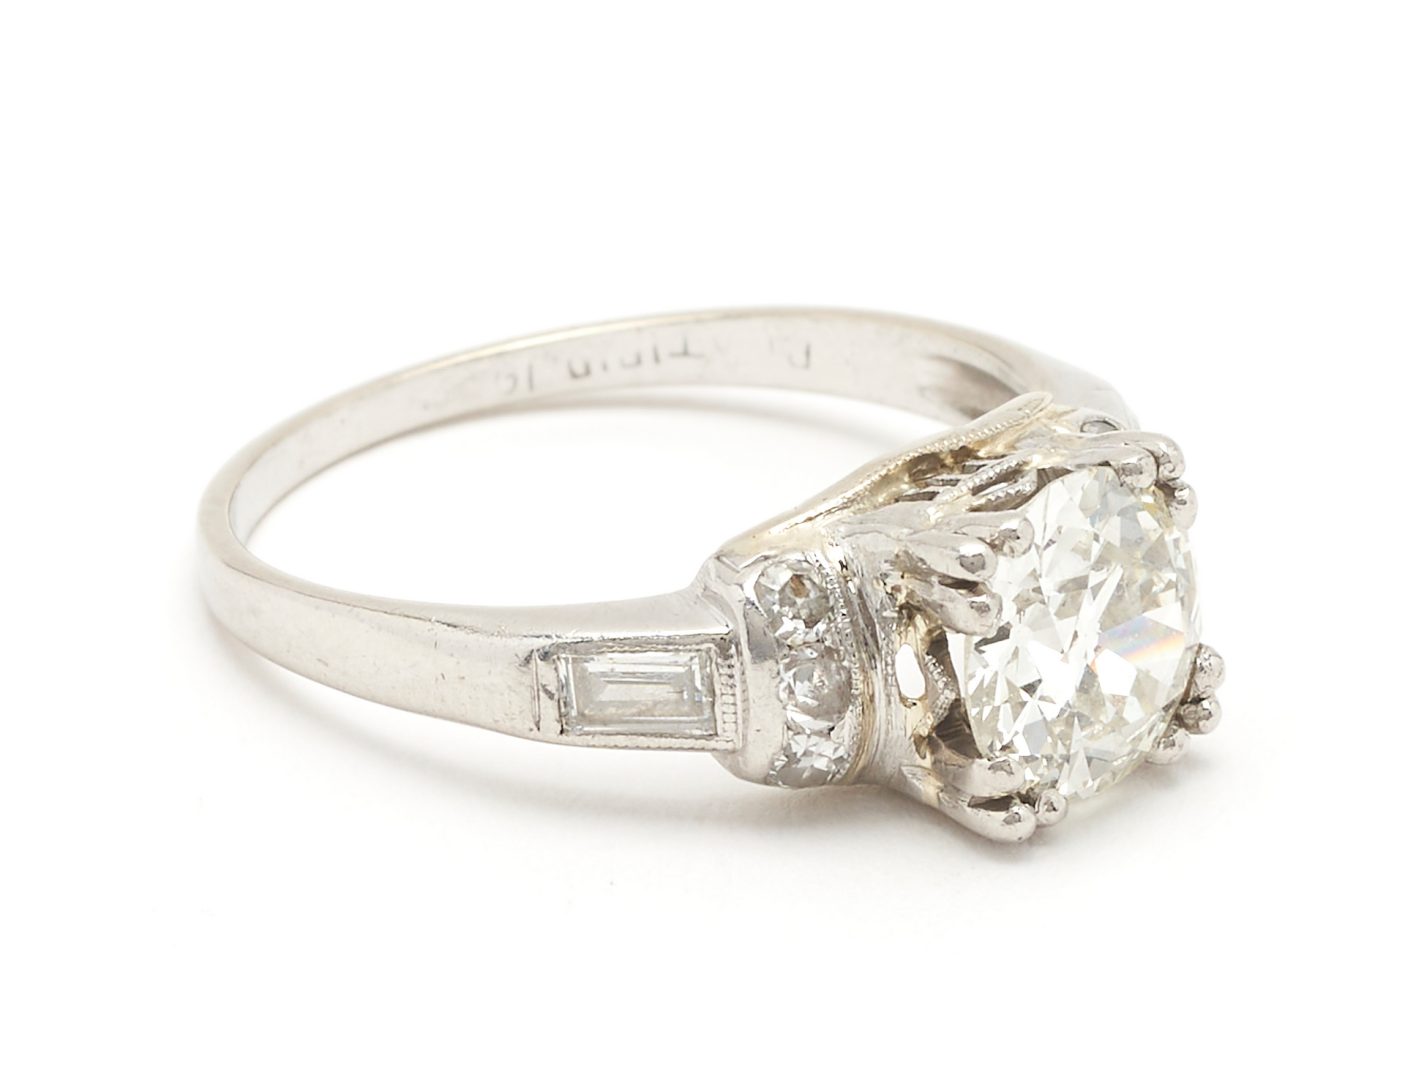 Lot 51: Ladies Art Deco Platinum Diamond Ring